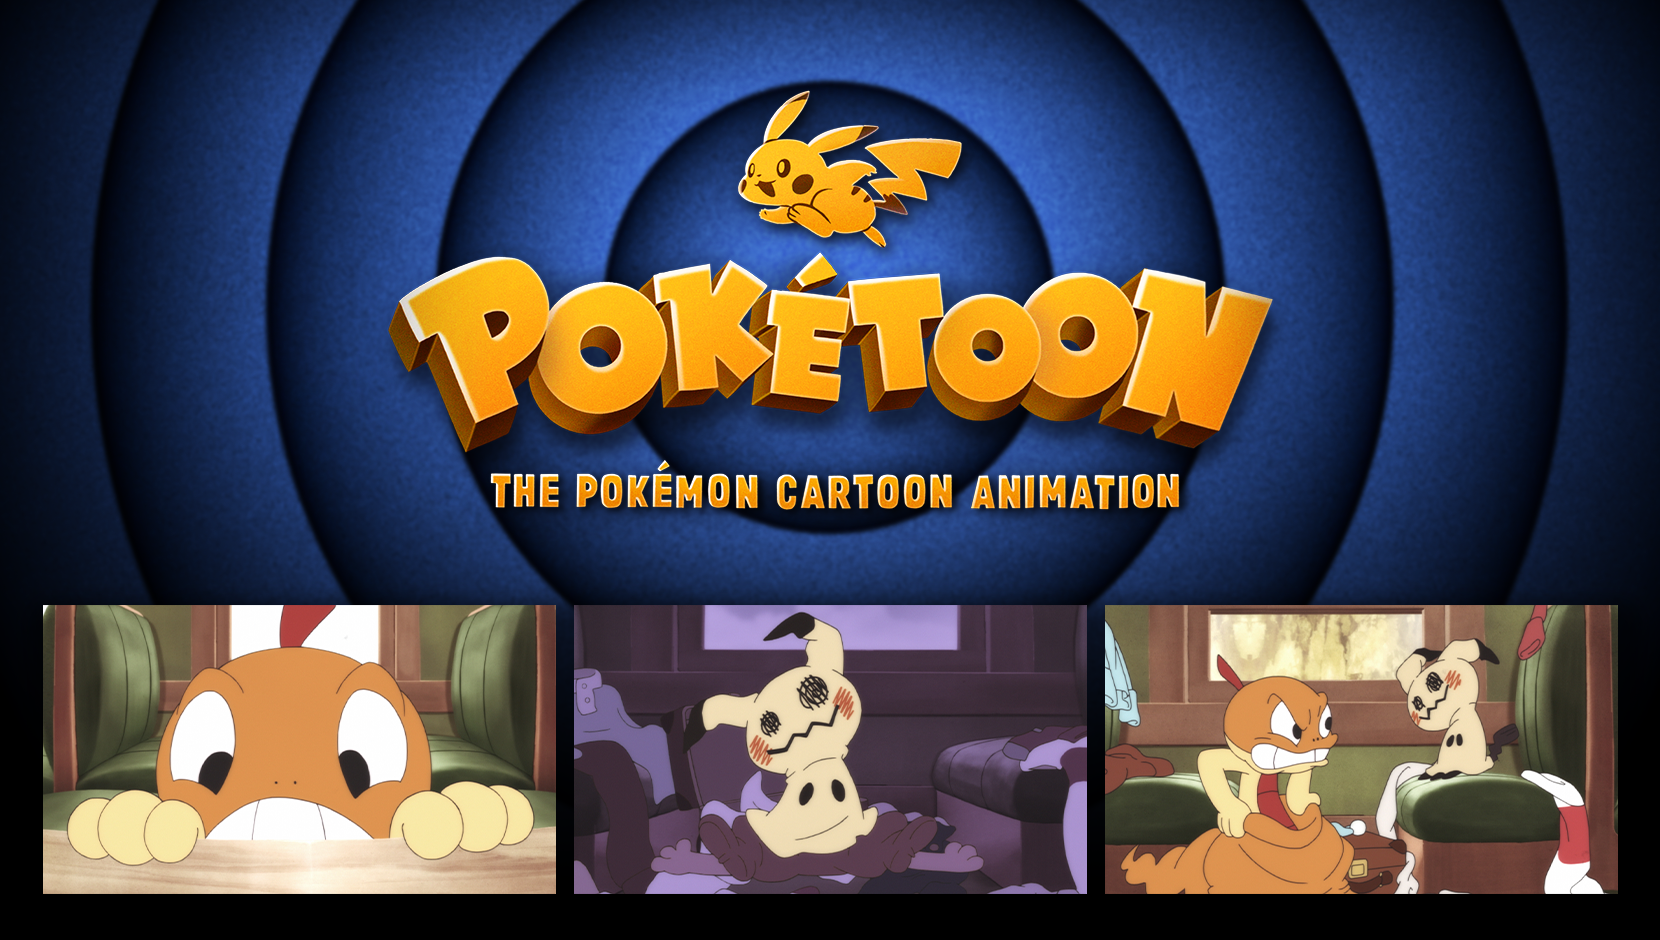 PokeToon libera su primer episodio, Scraggy y Mimikyu